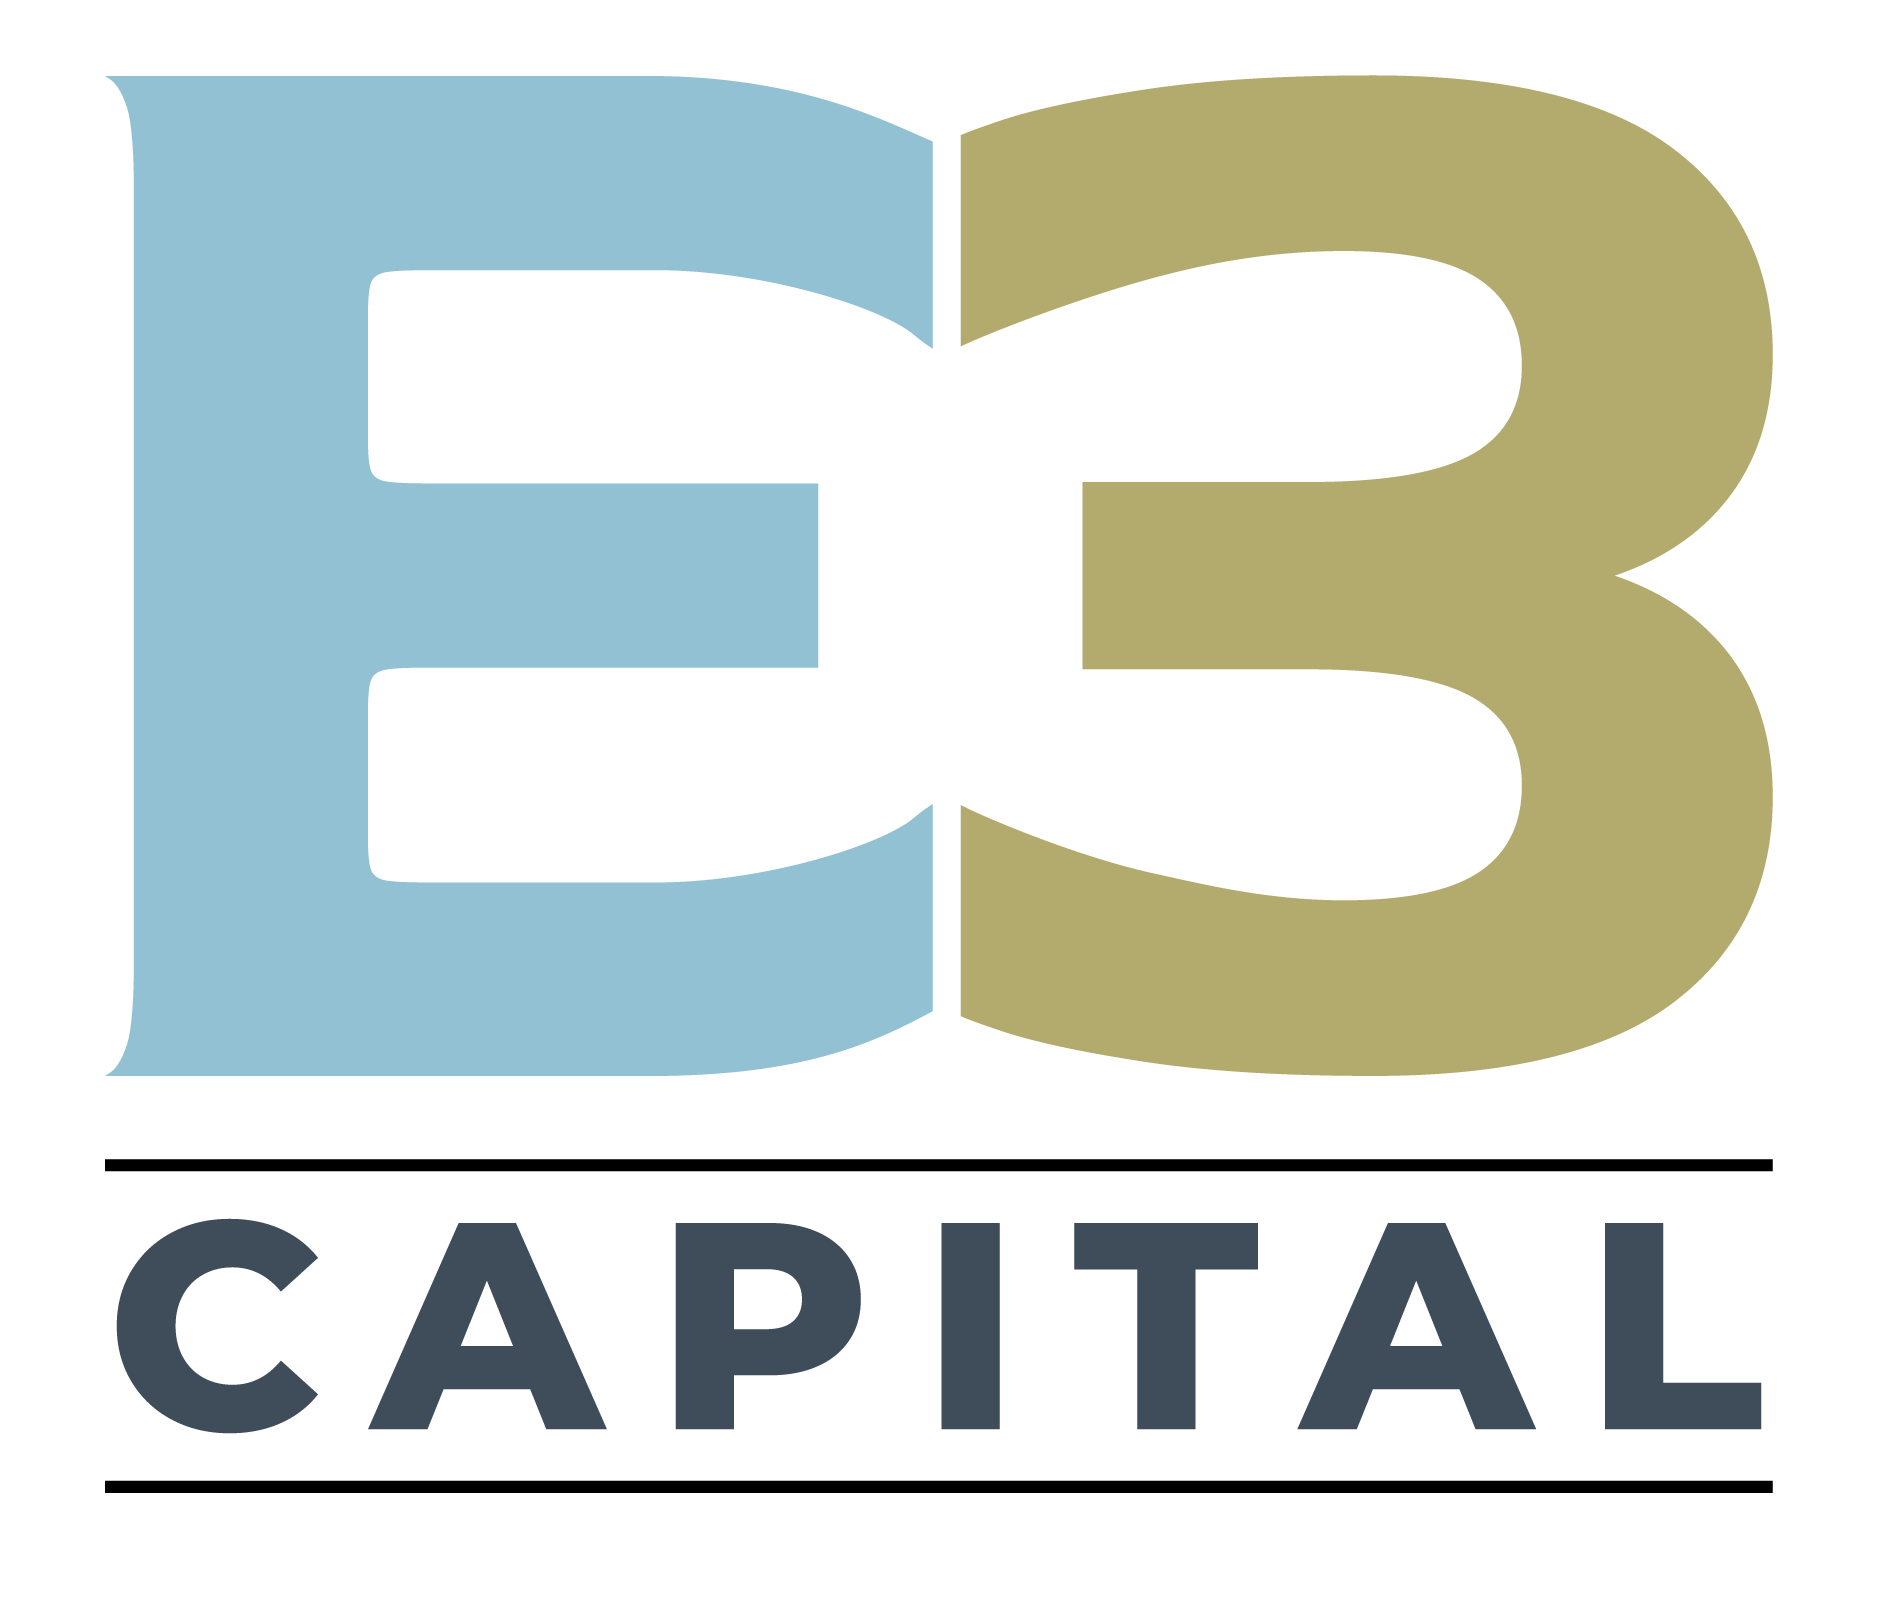 E3 Capital